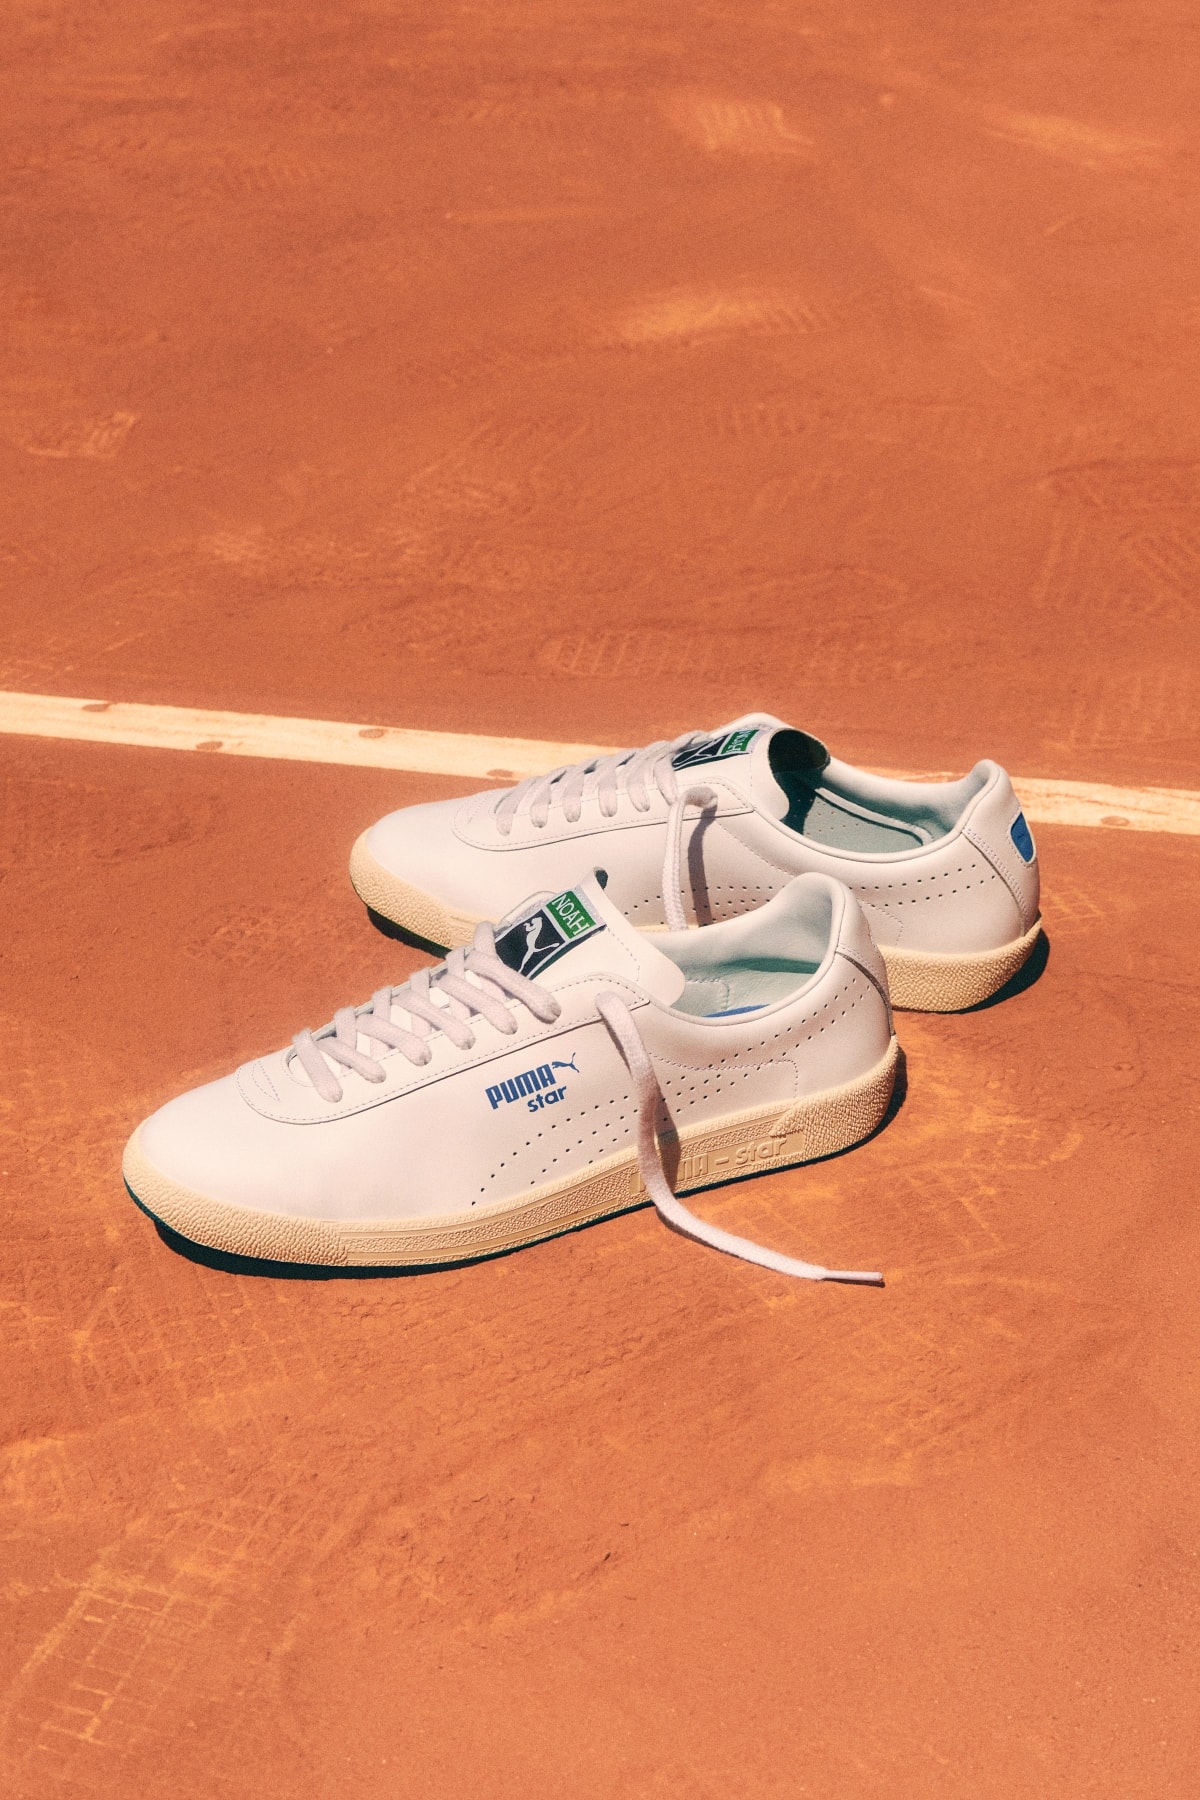 스포츠와 스타일의 만남, 푸마 x 노아 첫 번째 협업 컬렉션 출시 puma noah tennis collaboration collection 컬래버레이션